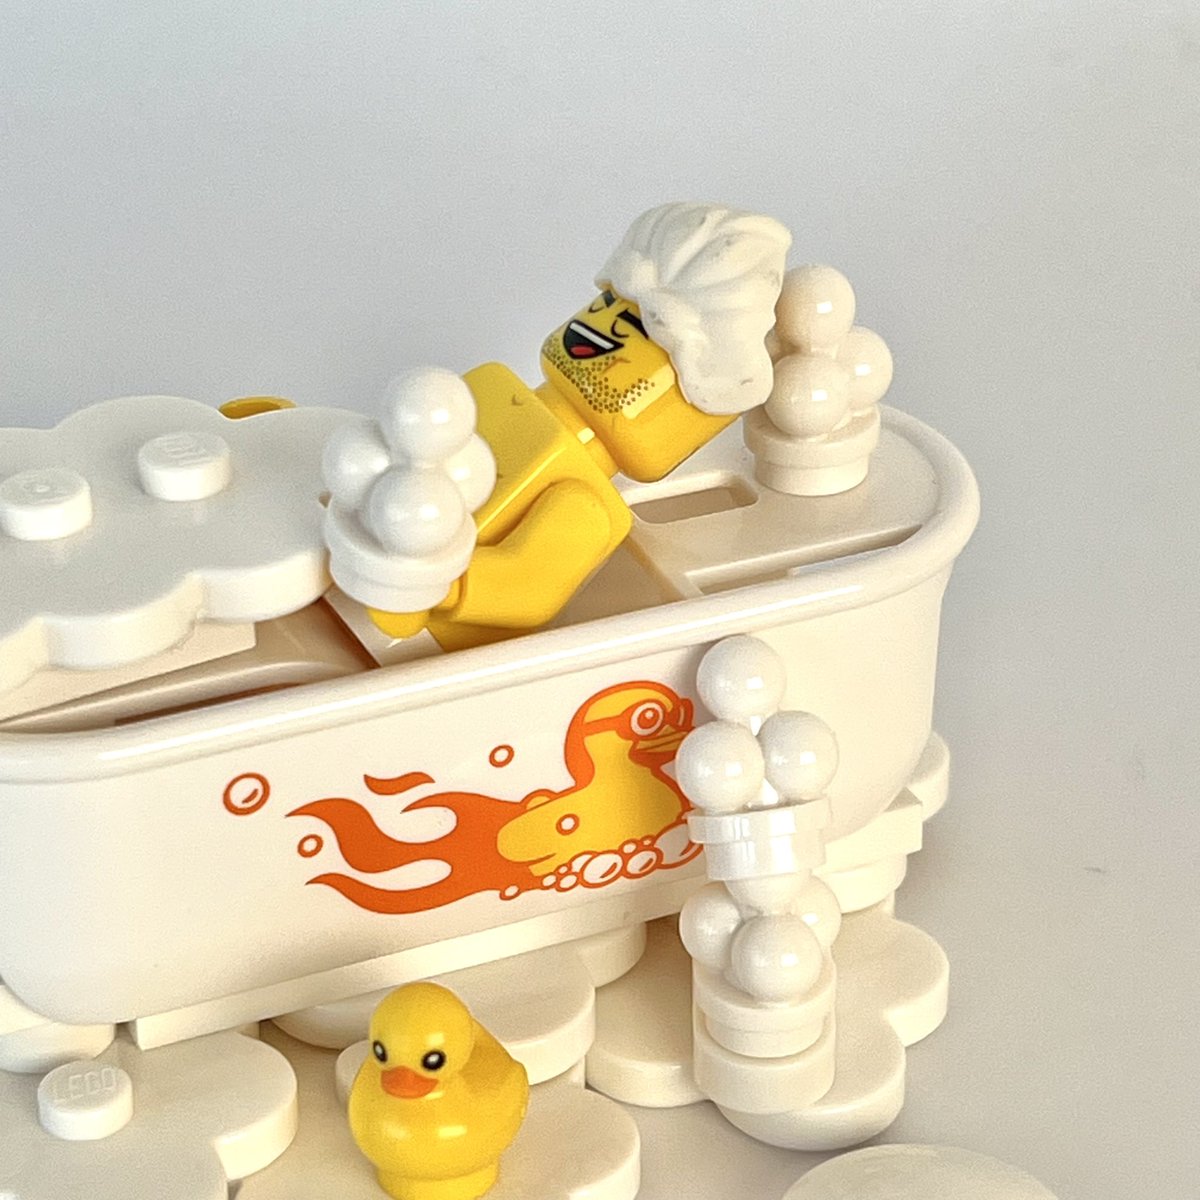 あわあわお風呂🛁

去年は銭湯にで出演した彼に
今回はバブルバスに🛁
ああ、ゆっくりしたい。

#お風呂 
#lego 
#toys 
#afol 
#kameyanlegos 
#レゴ